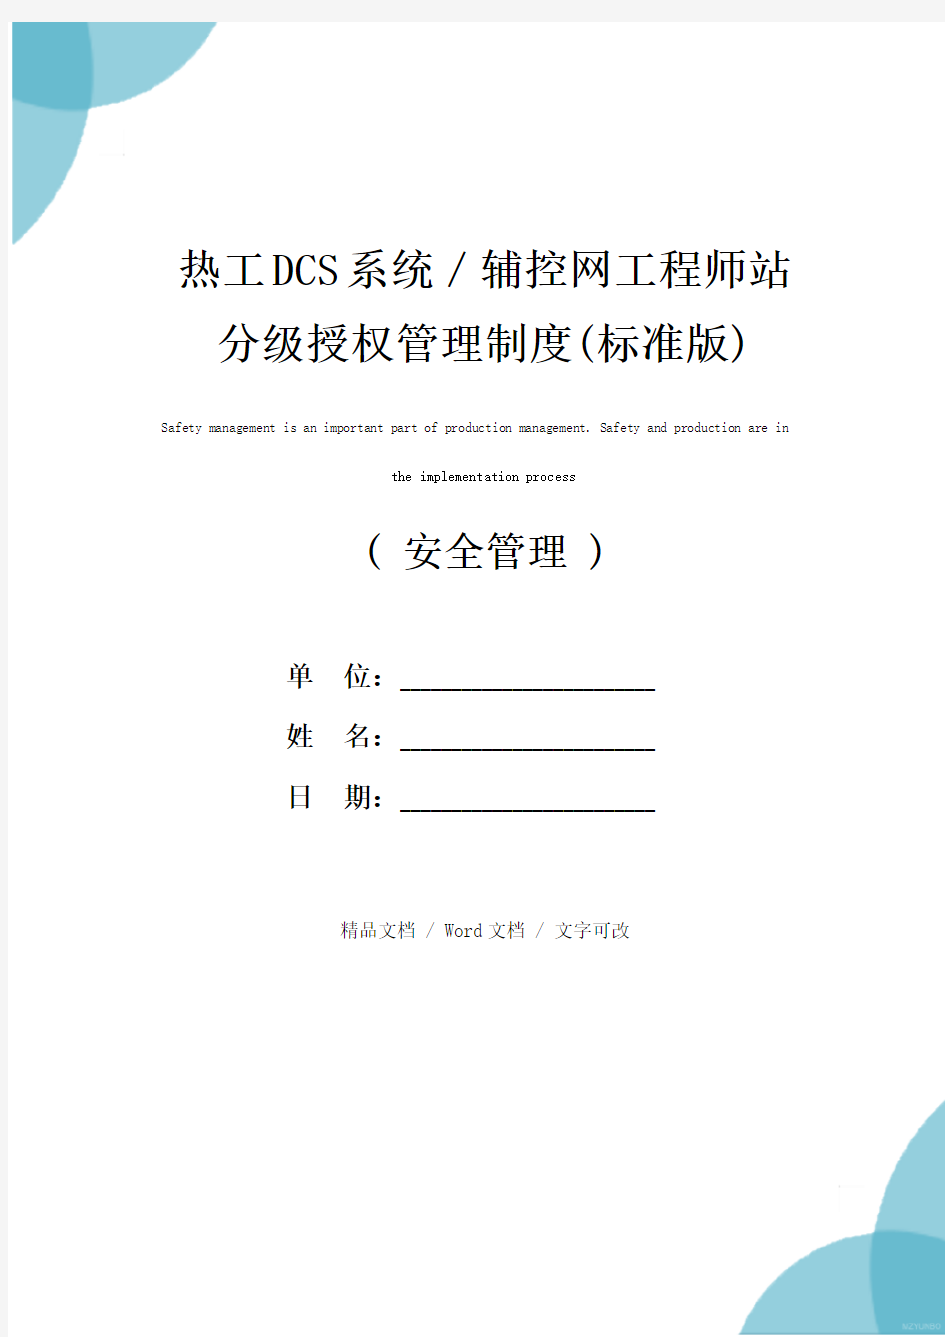 热工DCS系统／辅控网工程师站分级授权管理制度(标准版)